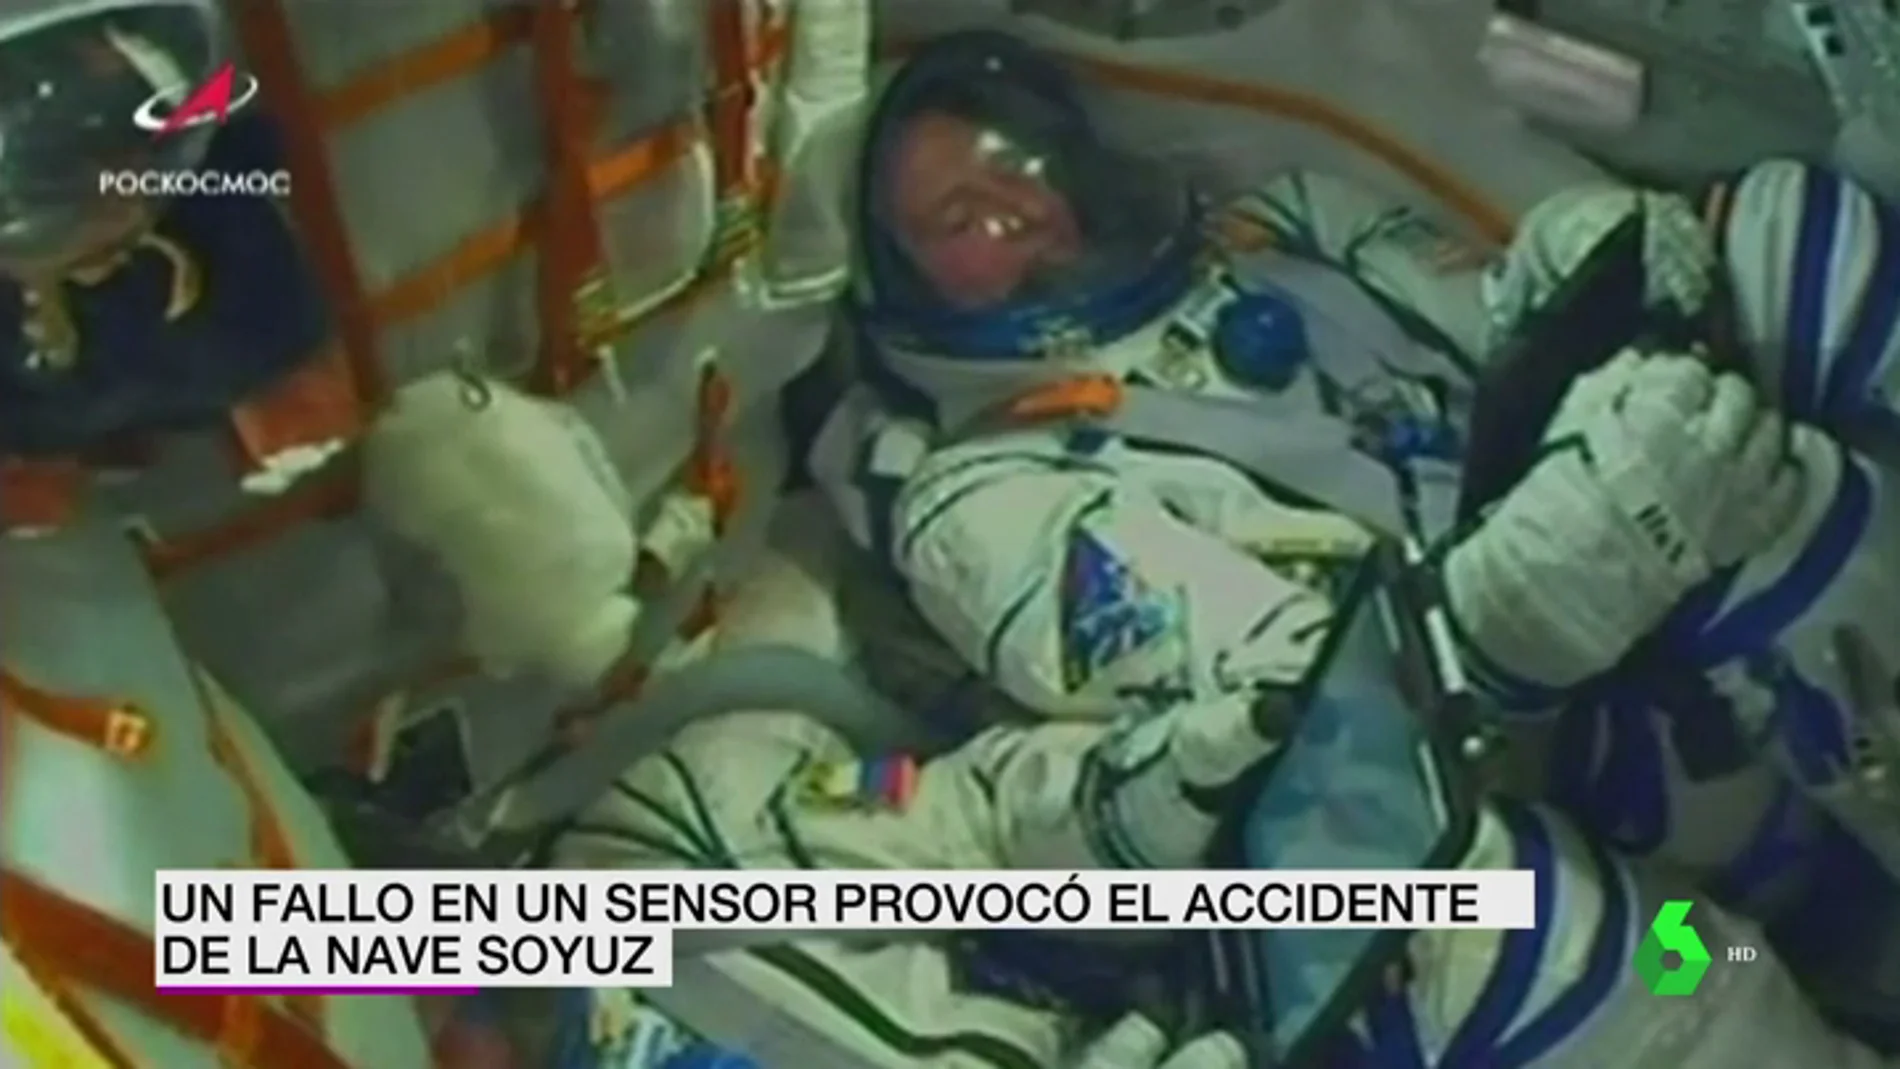 El accidente de la nave de Soyuz fue provocado por un fallo en el sensor